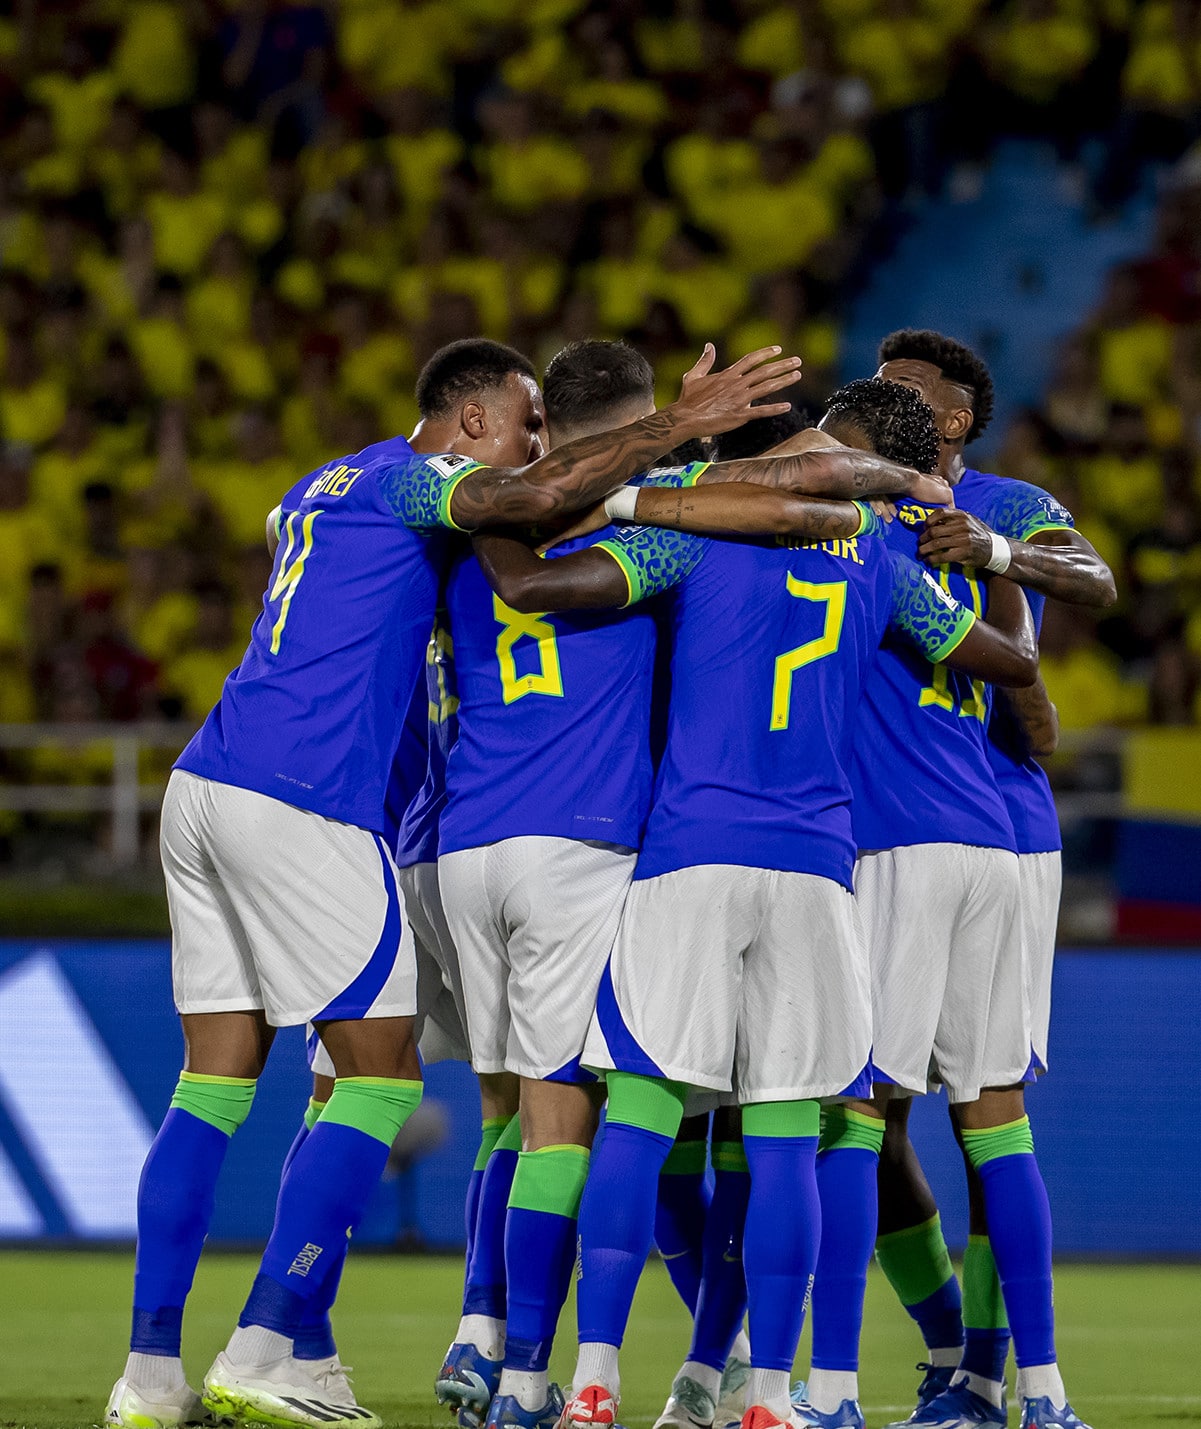 Futebol ao vivo: Brasil x Argentina pelas Eliminatórias, confira